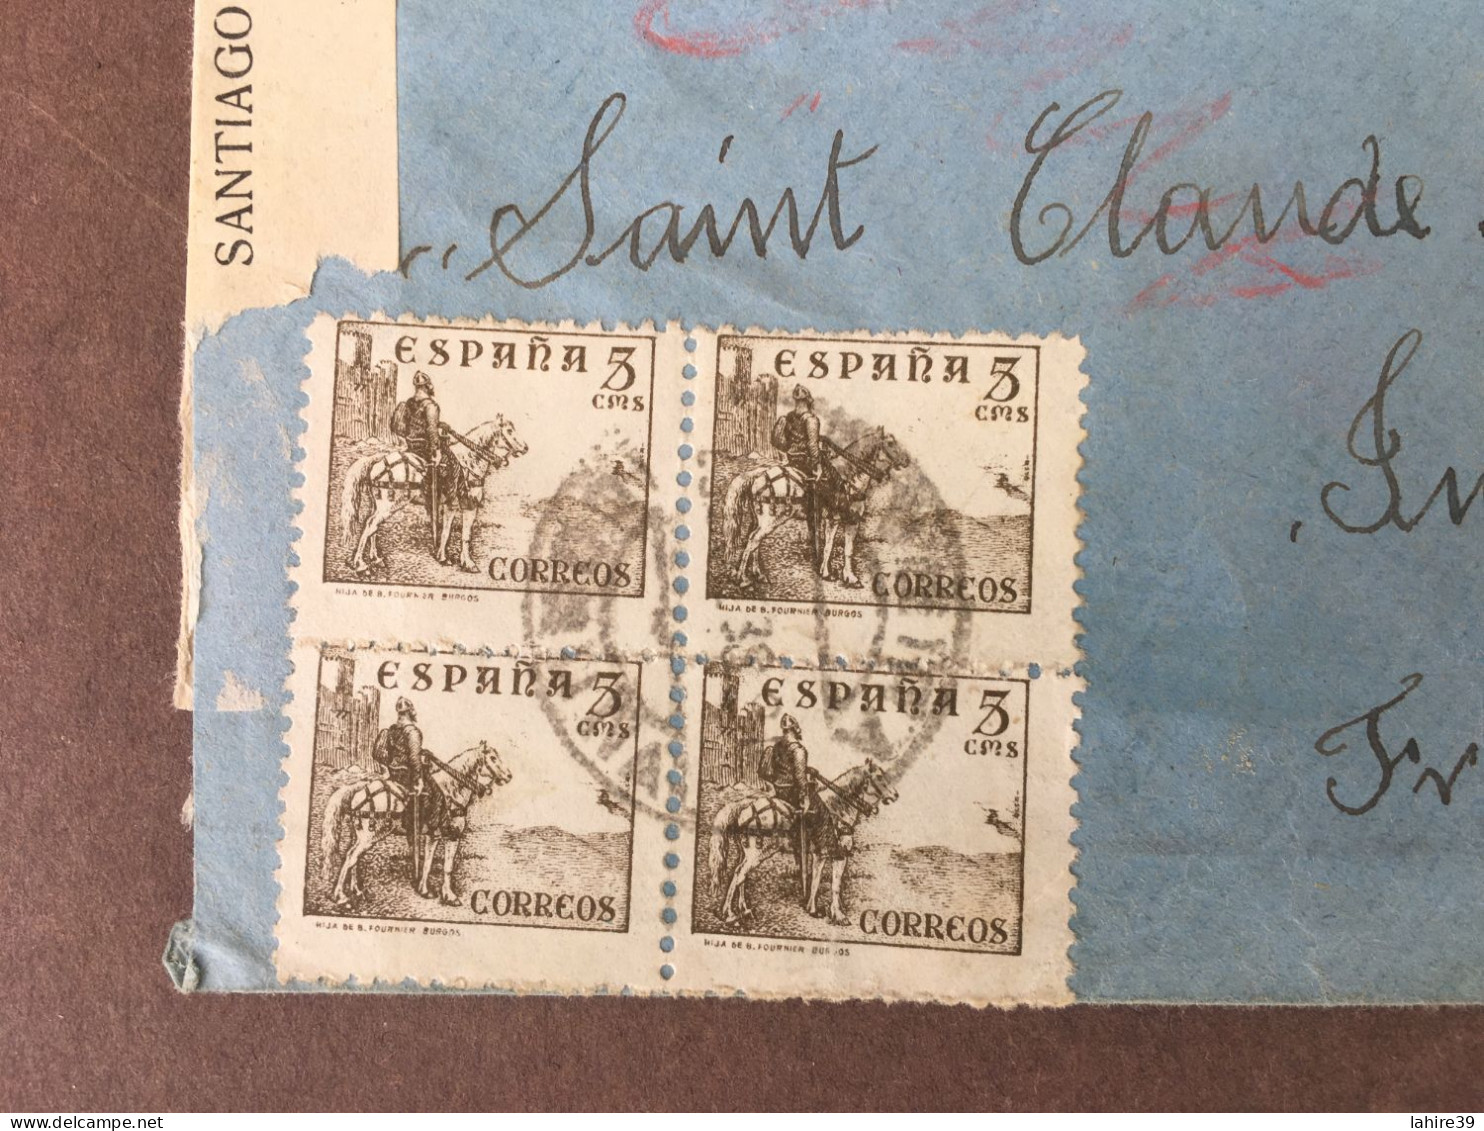 Enveloppe Timbrée / Censure Militaire / Iviva Espana / Espagne / 1938 - Lettres & Documents